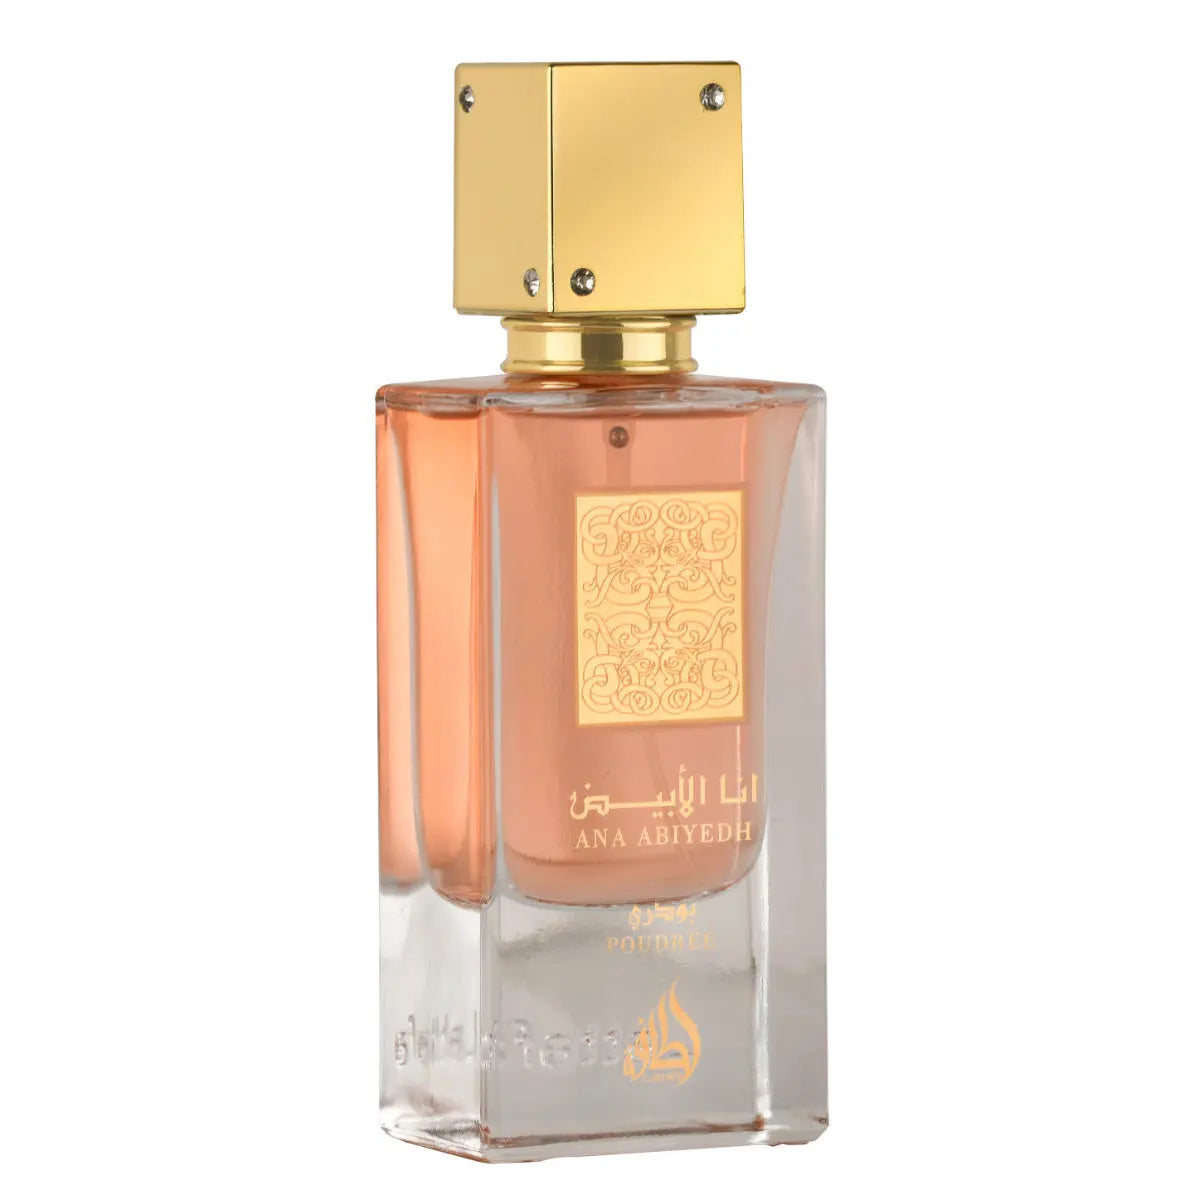 Ana Abiyedh Poudree Perfume 60ml EDP Lattafa-Emirates Oud